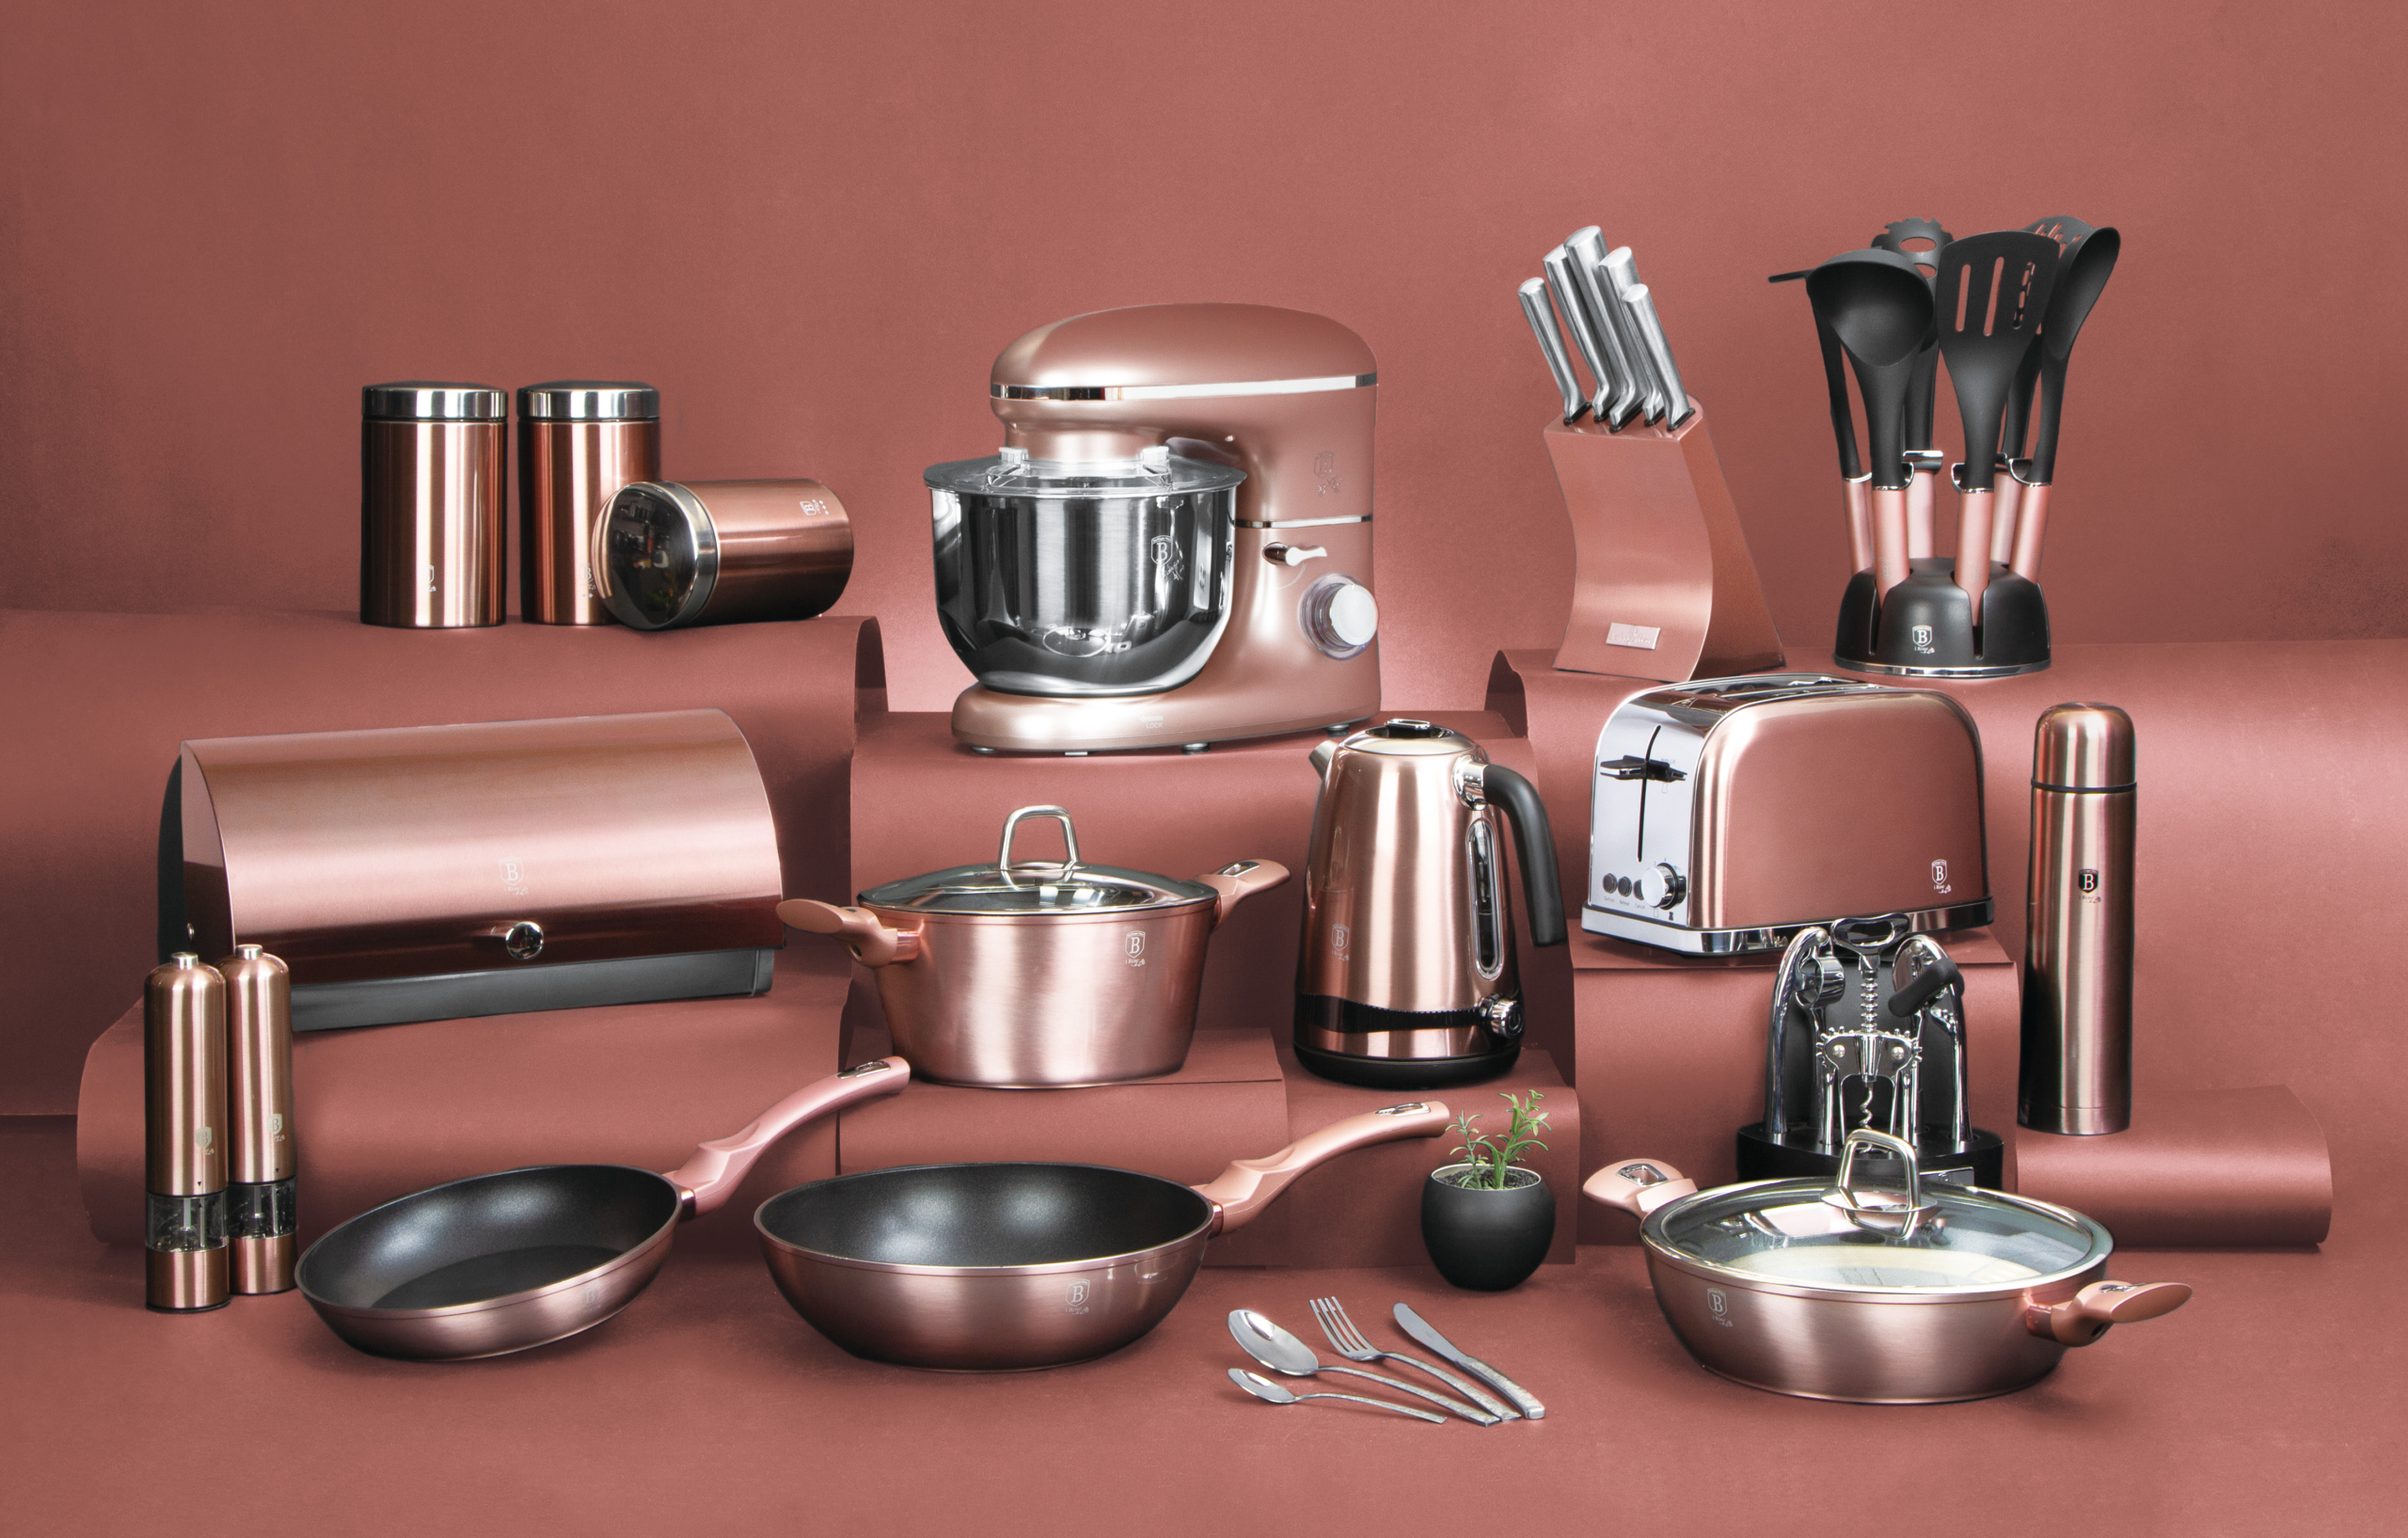 BerlingerHaus I-Rose Collection teljes termékcsalád minden azonos színű konyhai eszközzel